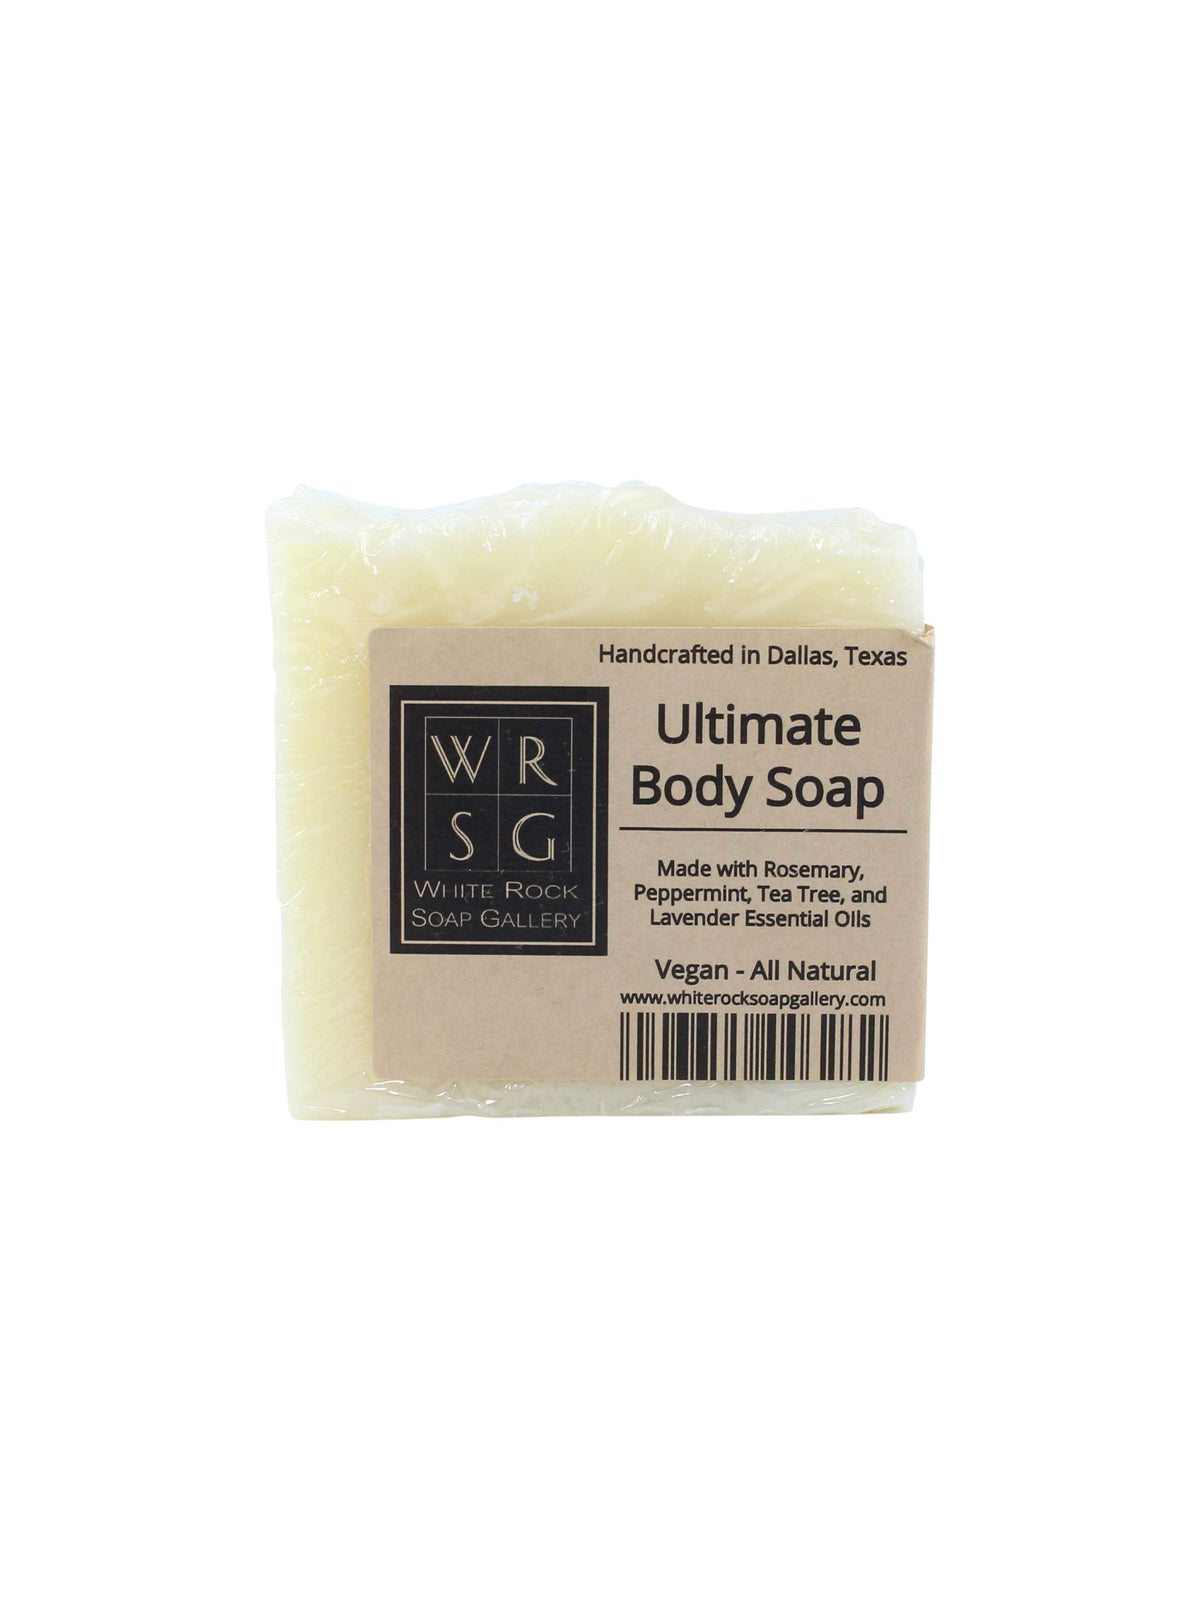 Bomba de baño de menta batida y maravillosa — White Rock Soap Gallery